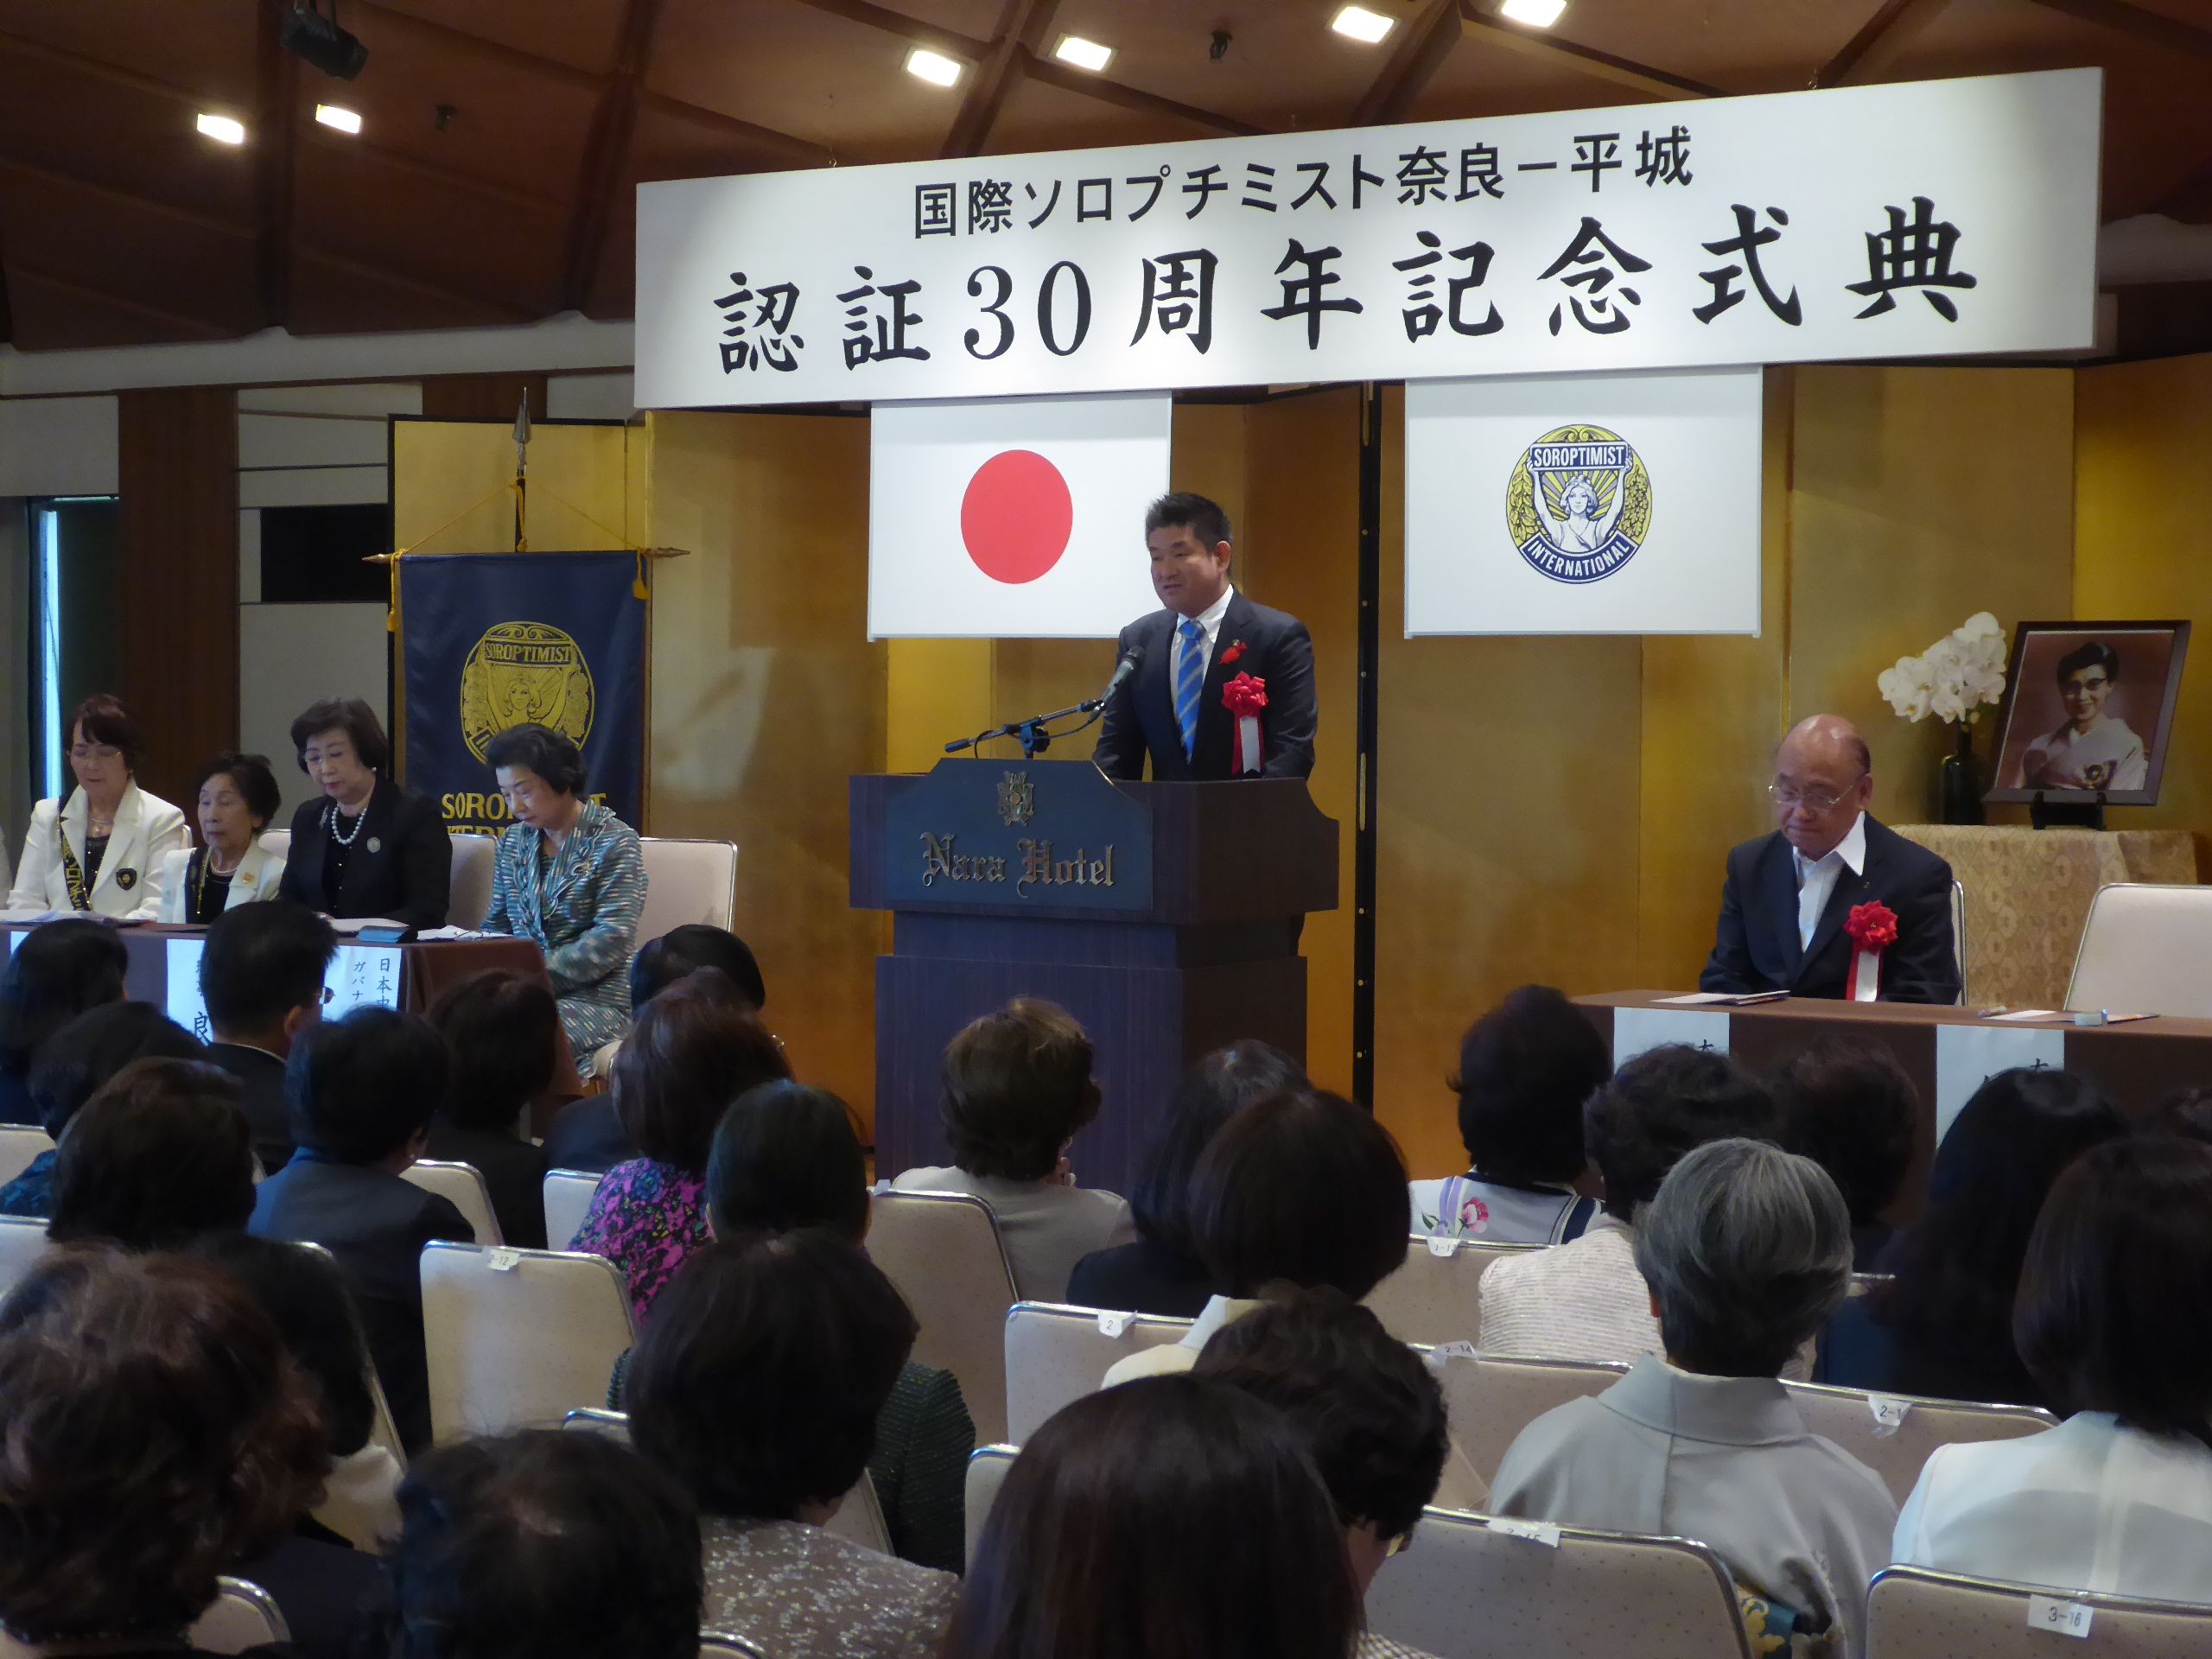 国際ソロプチミスト奈良-平城 認証30周年記念式典の画像